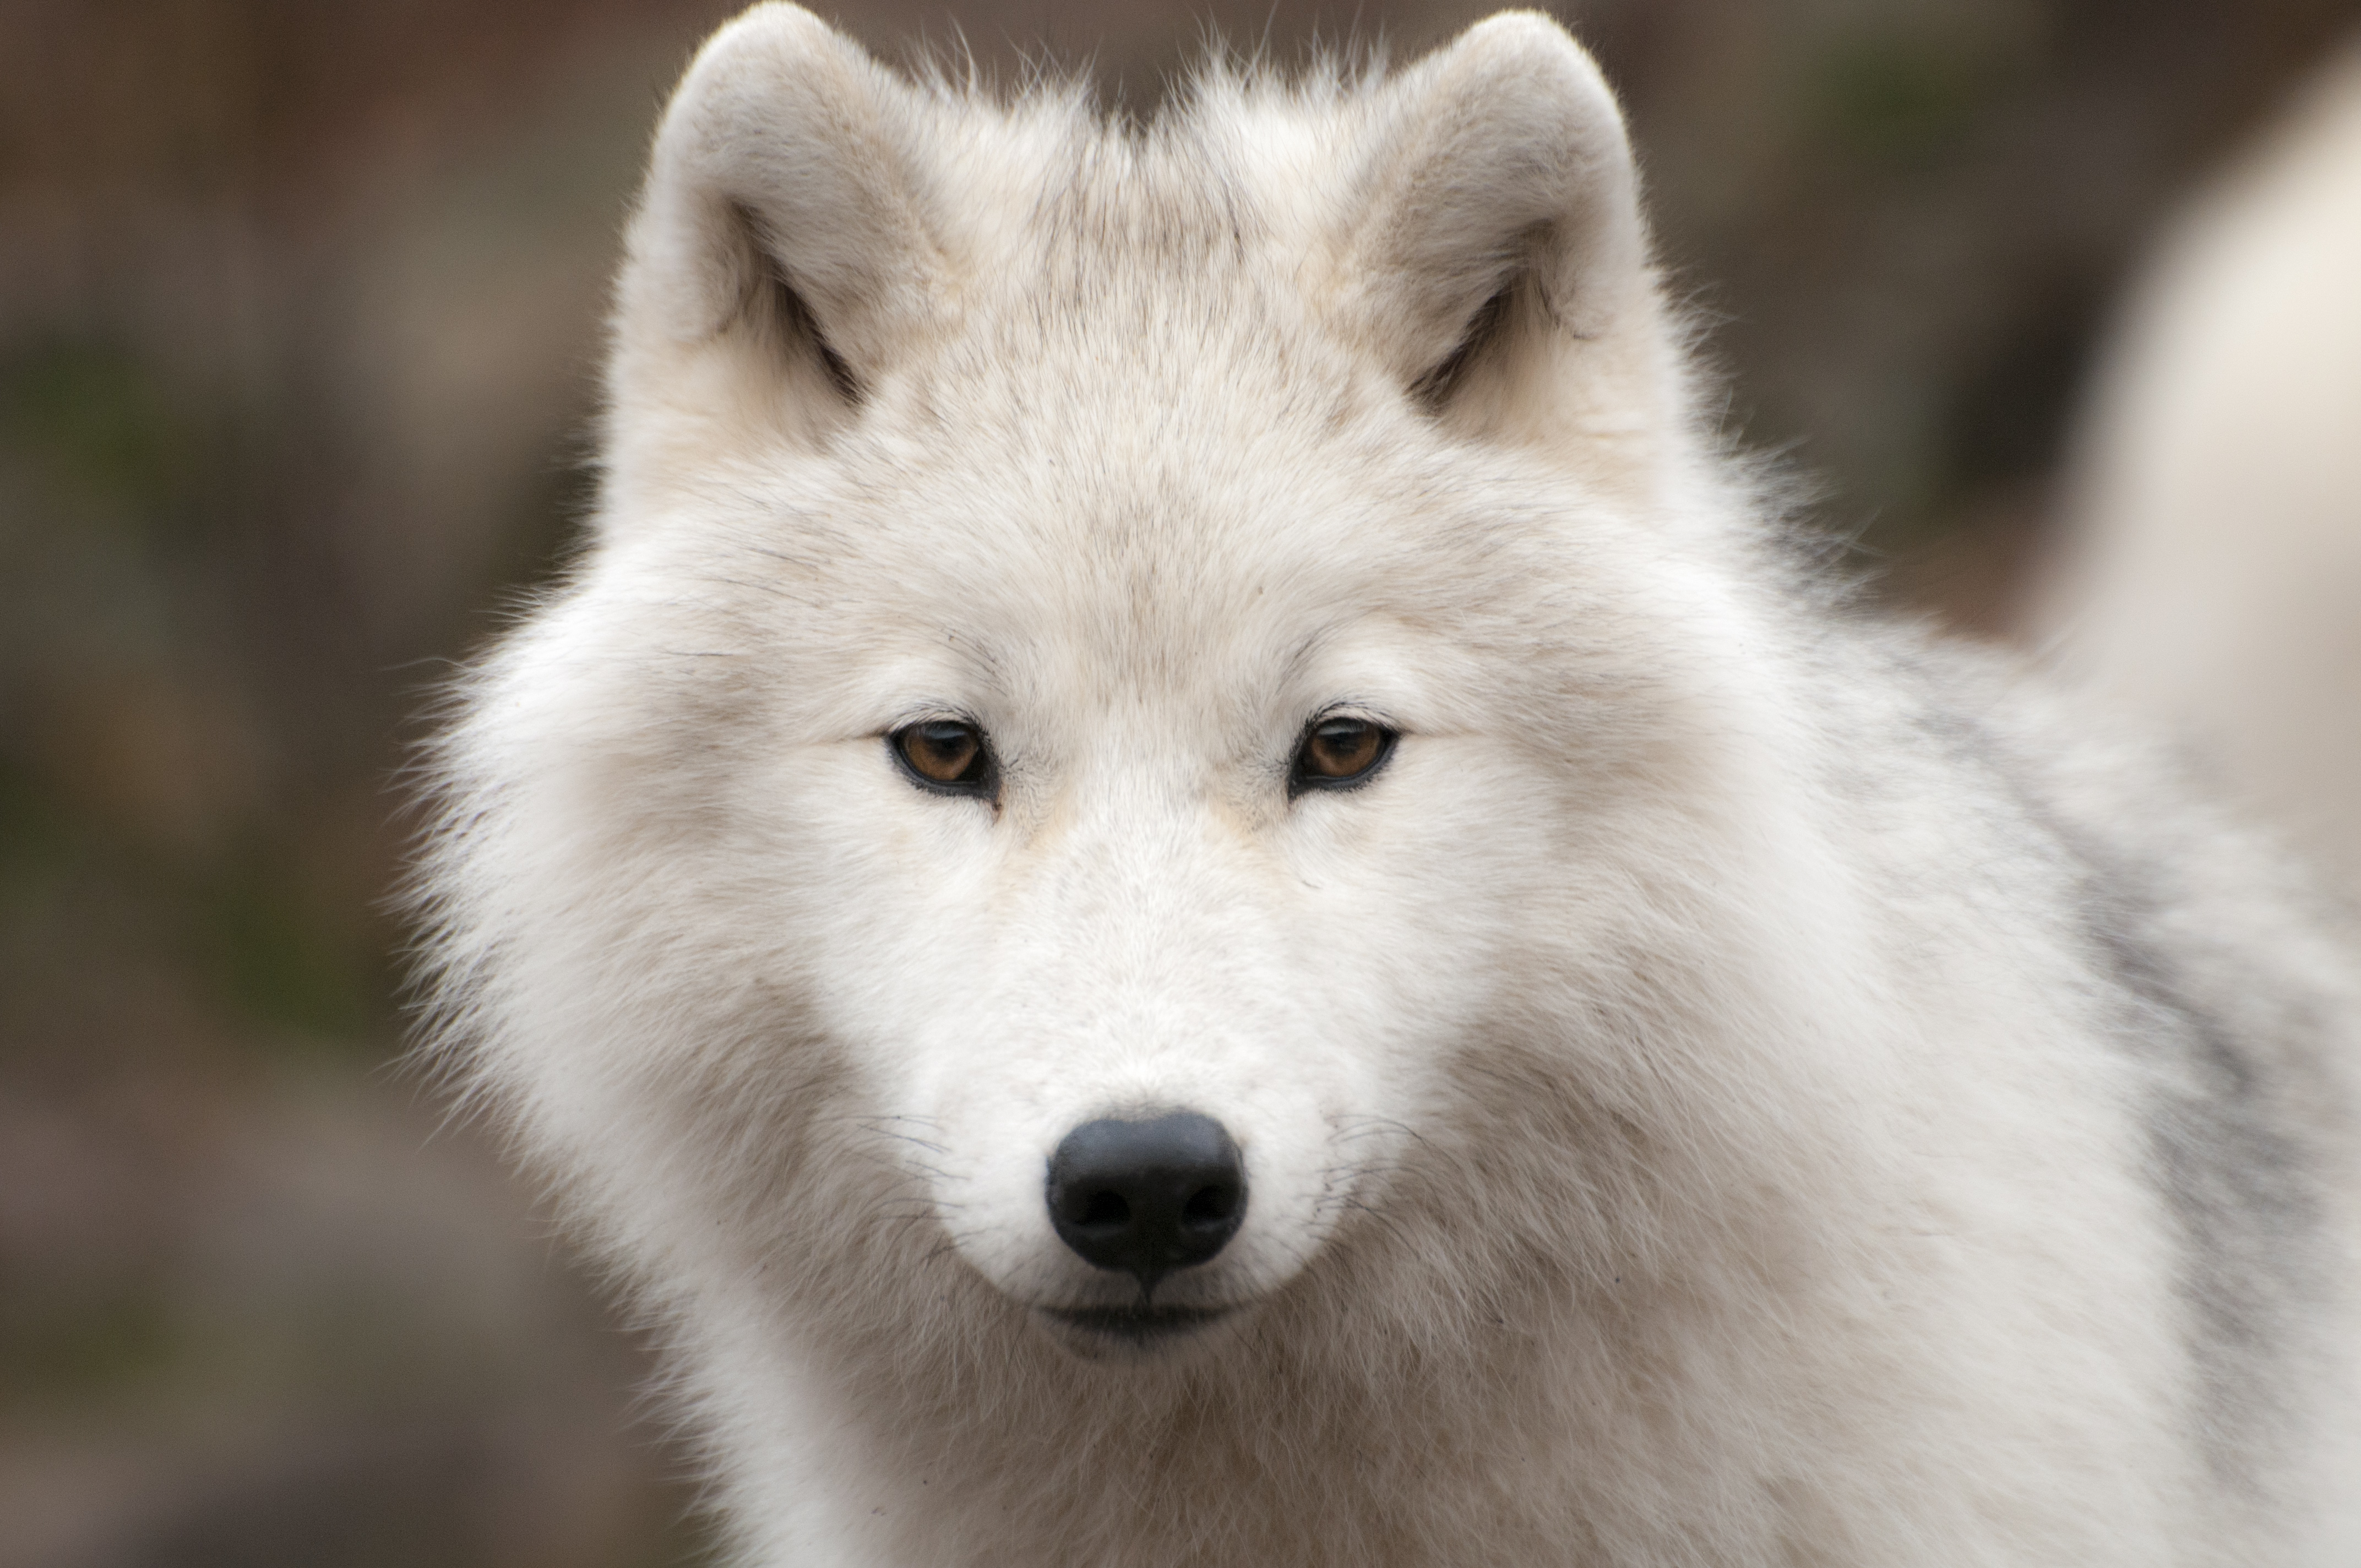 The Wolf スマホアプリを攻略しながら狼の生態をチェック